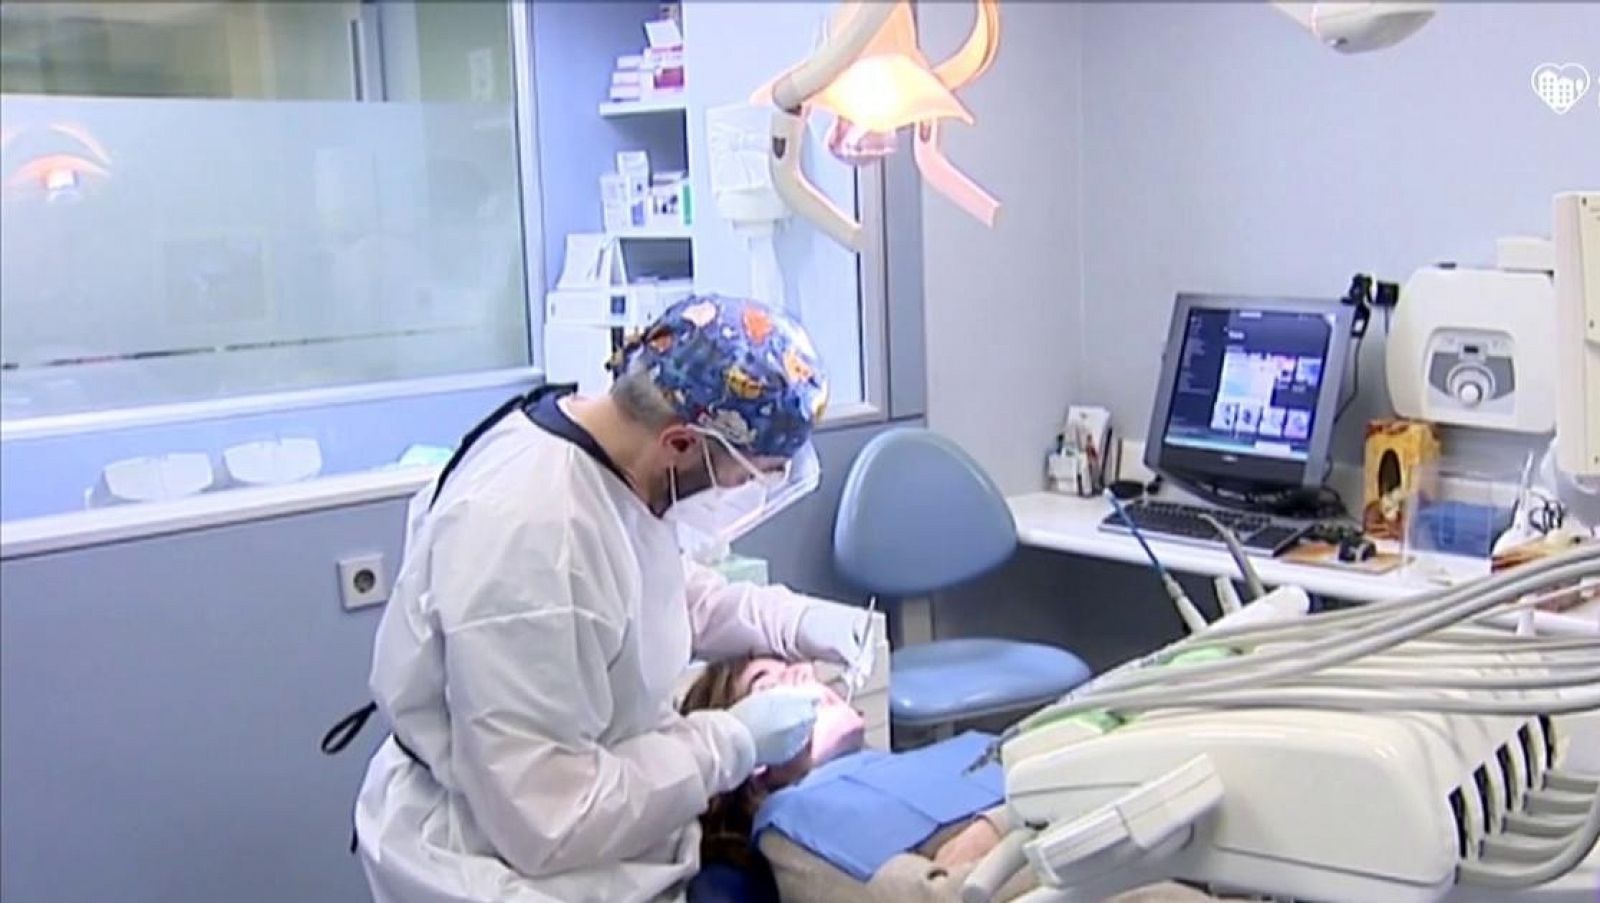 Los dentistas, trabajadores esenciales, muestran su preocupación por el riesgo de su actividad